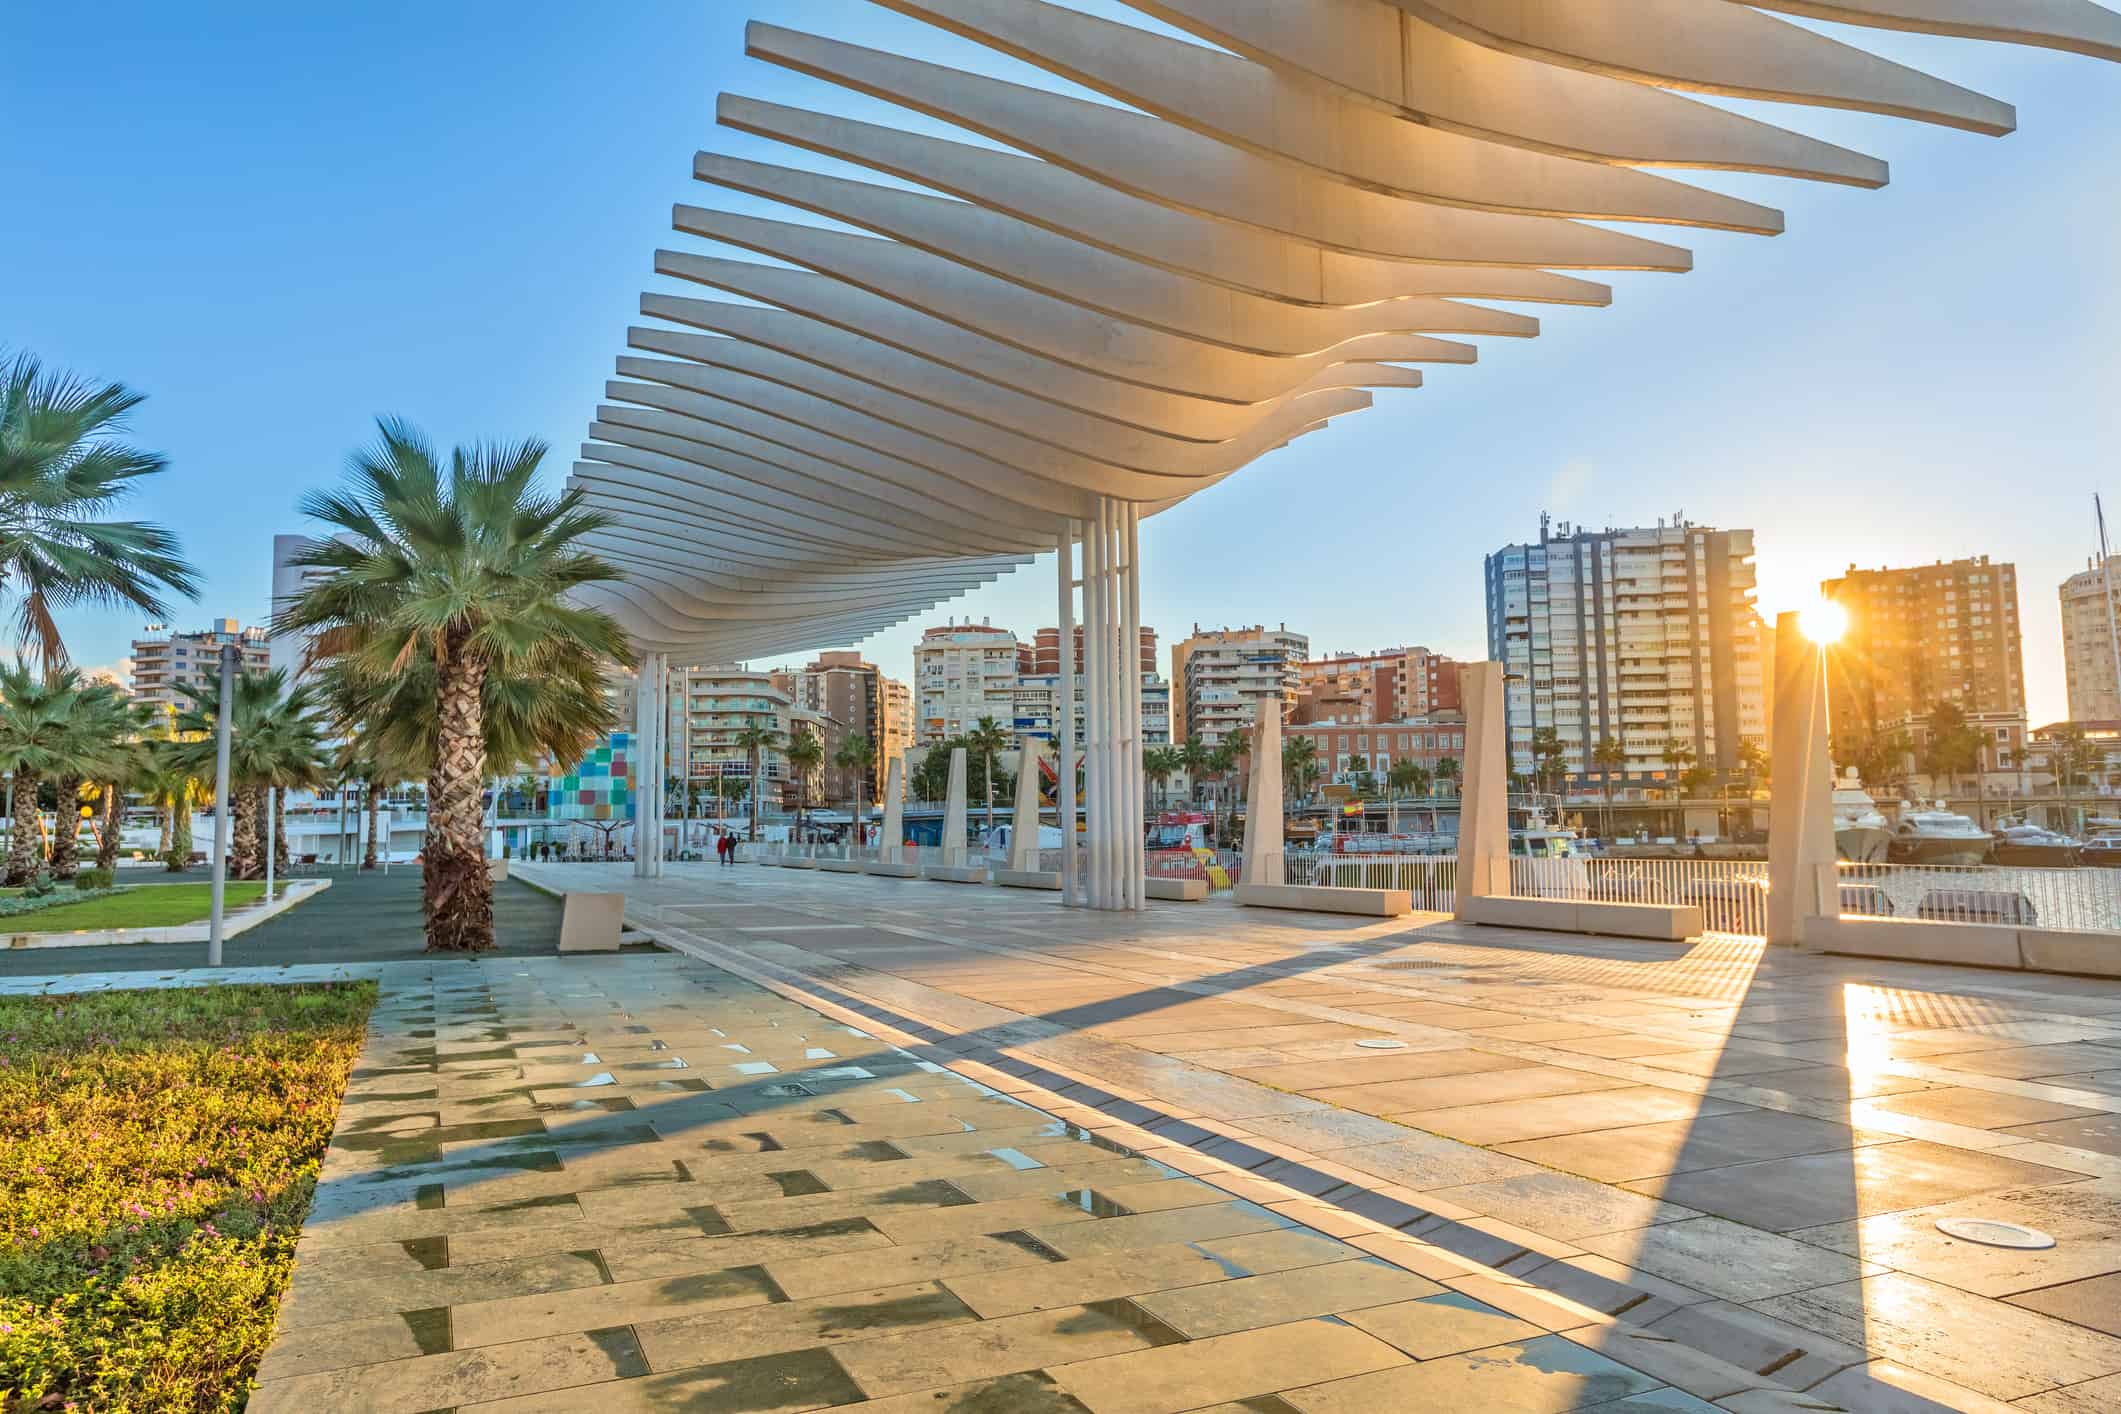 Argine pedonale nella zona portuale di Malaga